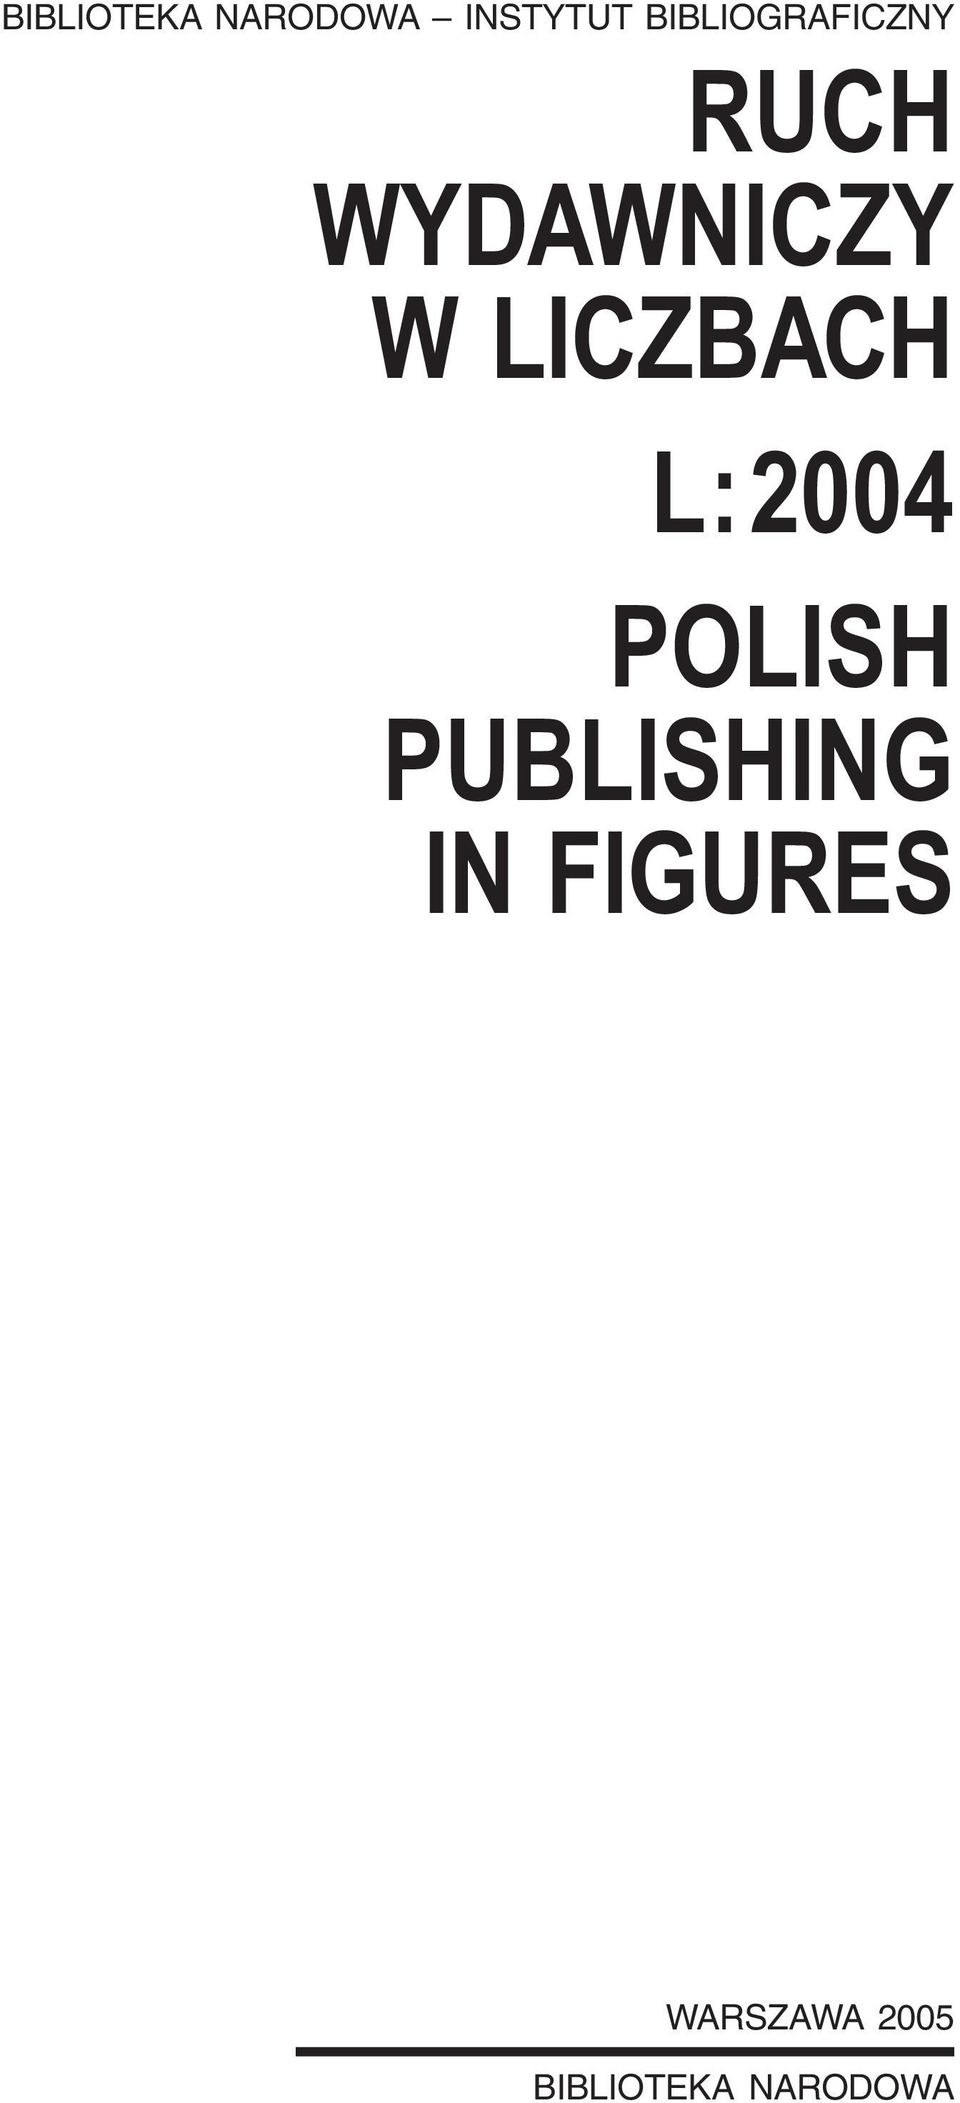 LICZBACH L : POLISH PUBLISHING IN